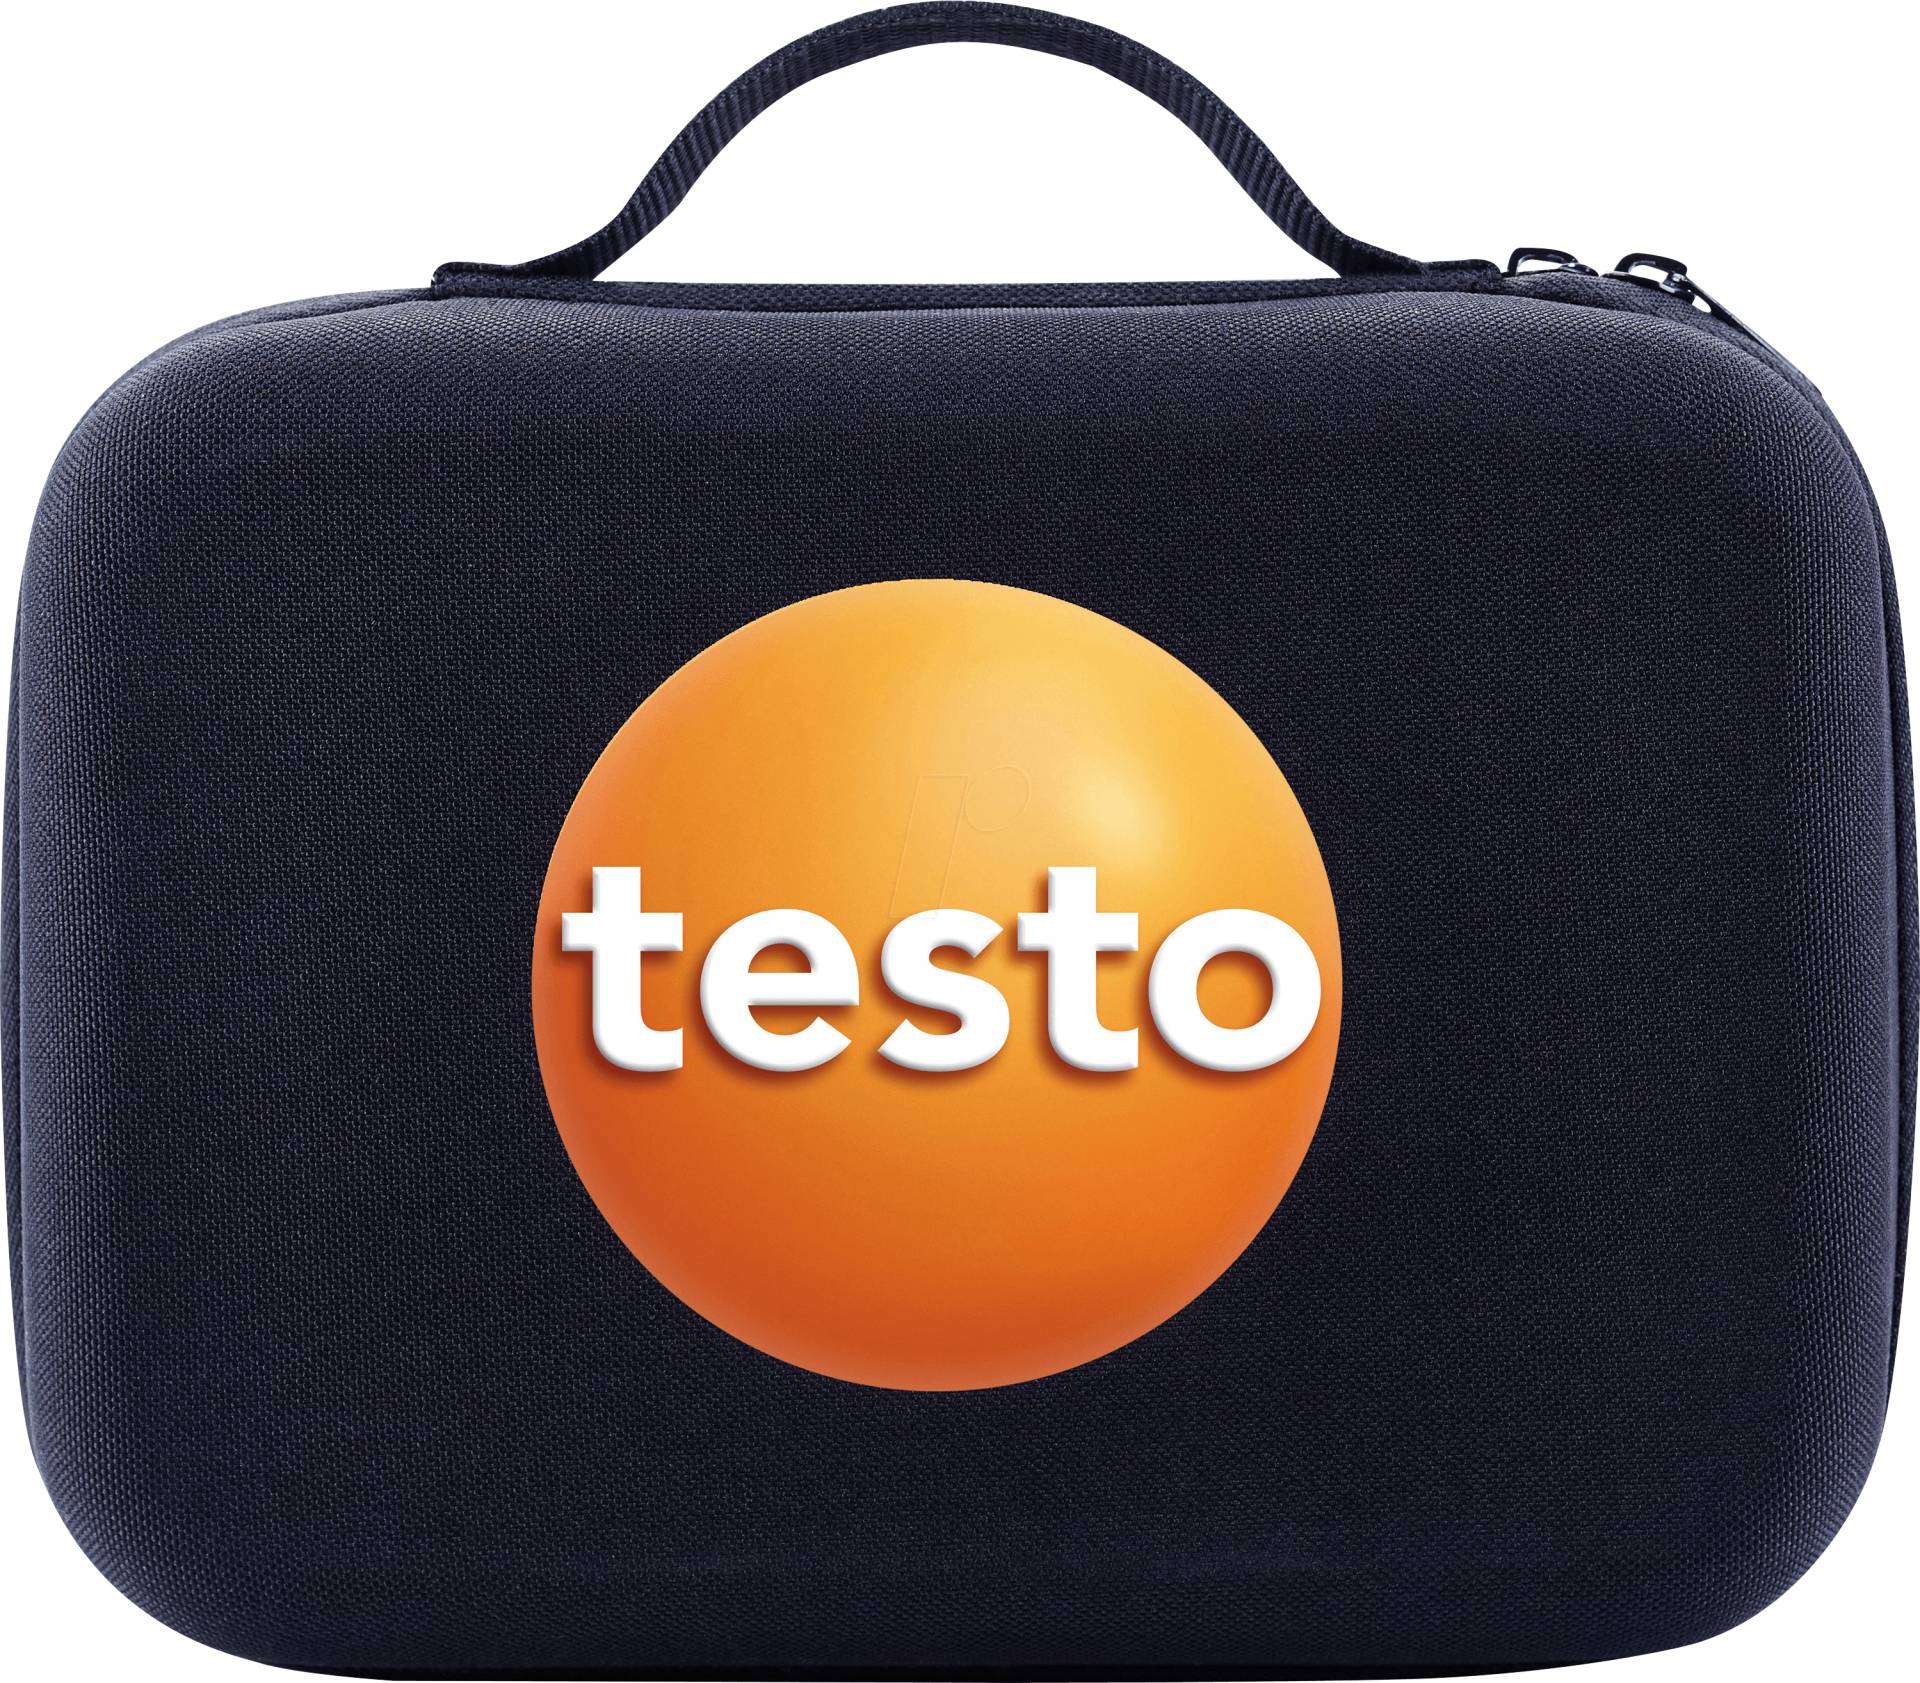 TESTO 0516 0240 - testo Smart Case ''Kälte'' - Aufbewahrungstasche von TESTO